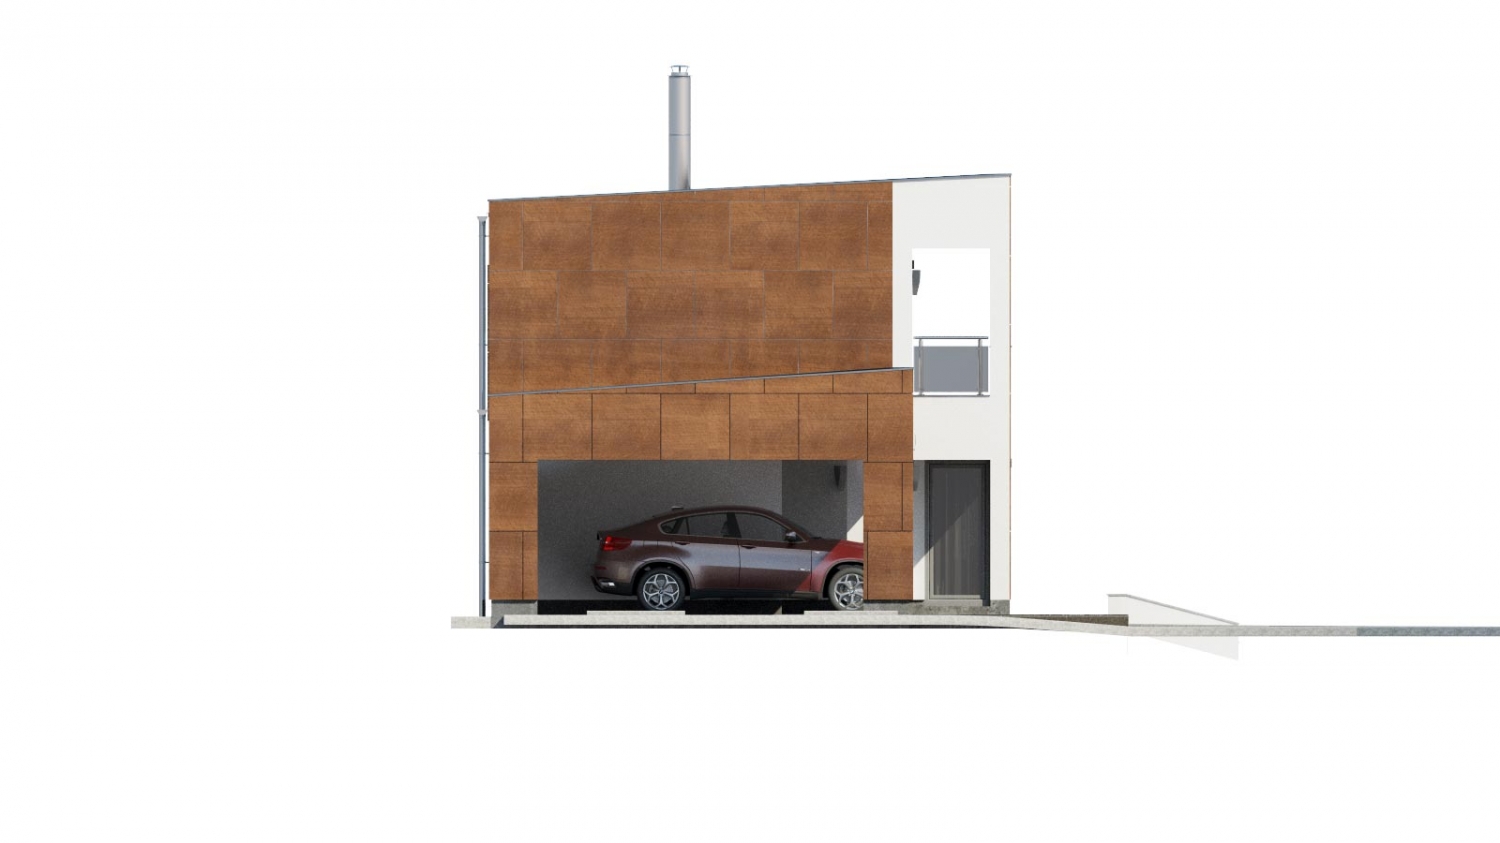 Zrkadlový pohľad 4. - Moderní poschoďový dům s plochou střechou a přístřeškem pro auta. Vhodný na úzký pozemek. Je možnost realizovat bez přístřešku, případně přístřešek upravit na garáž.